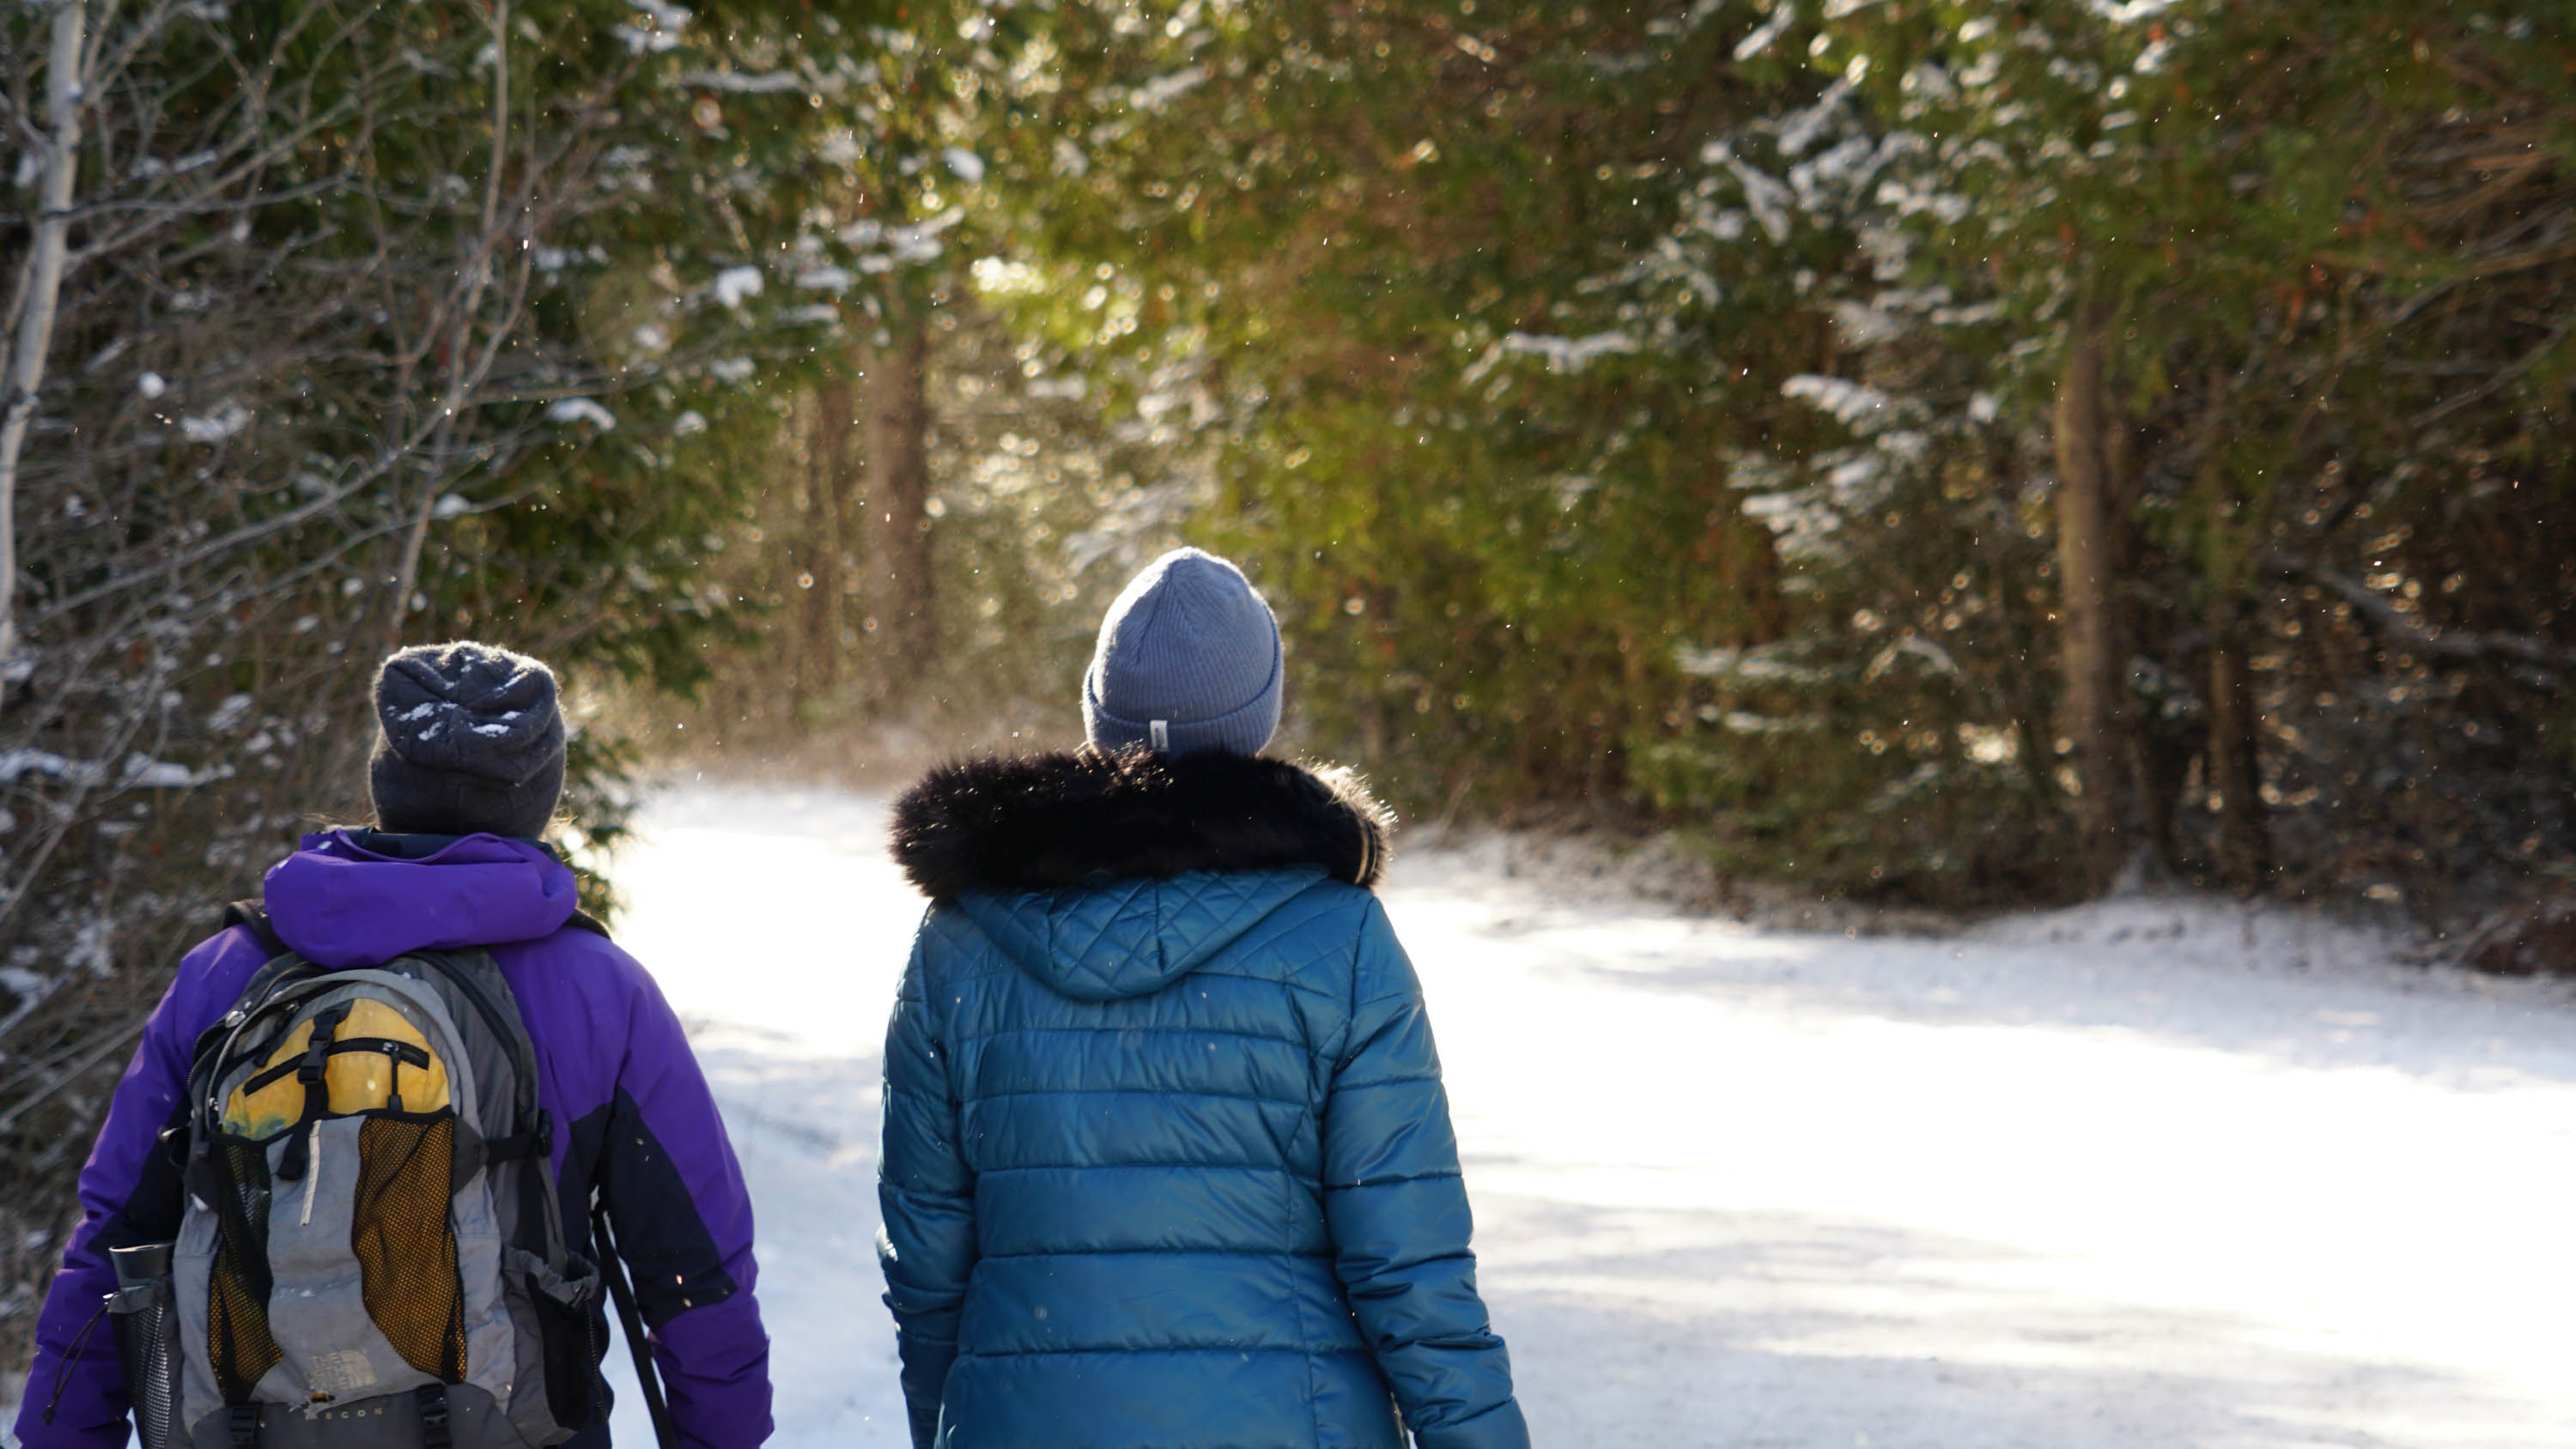 Two people walking along a trail in winter.